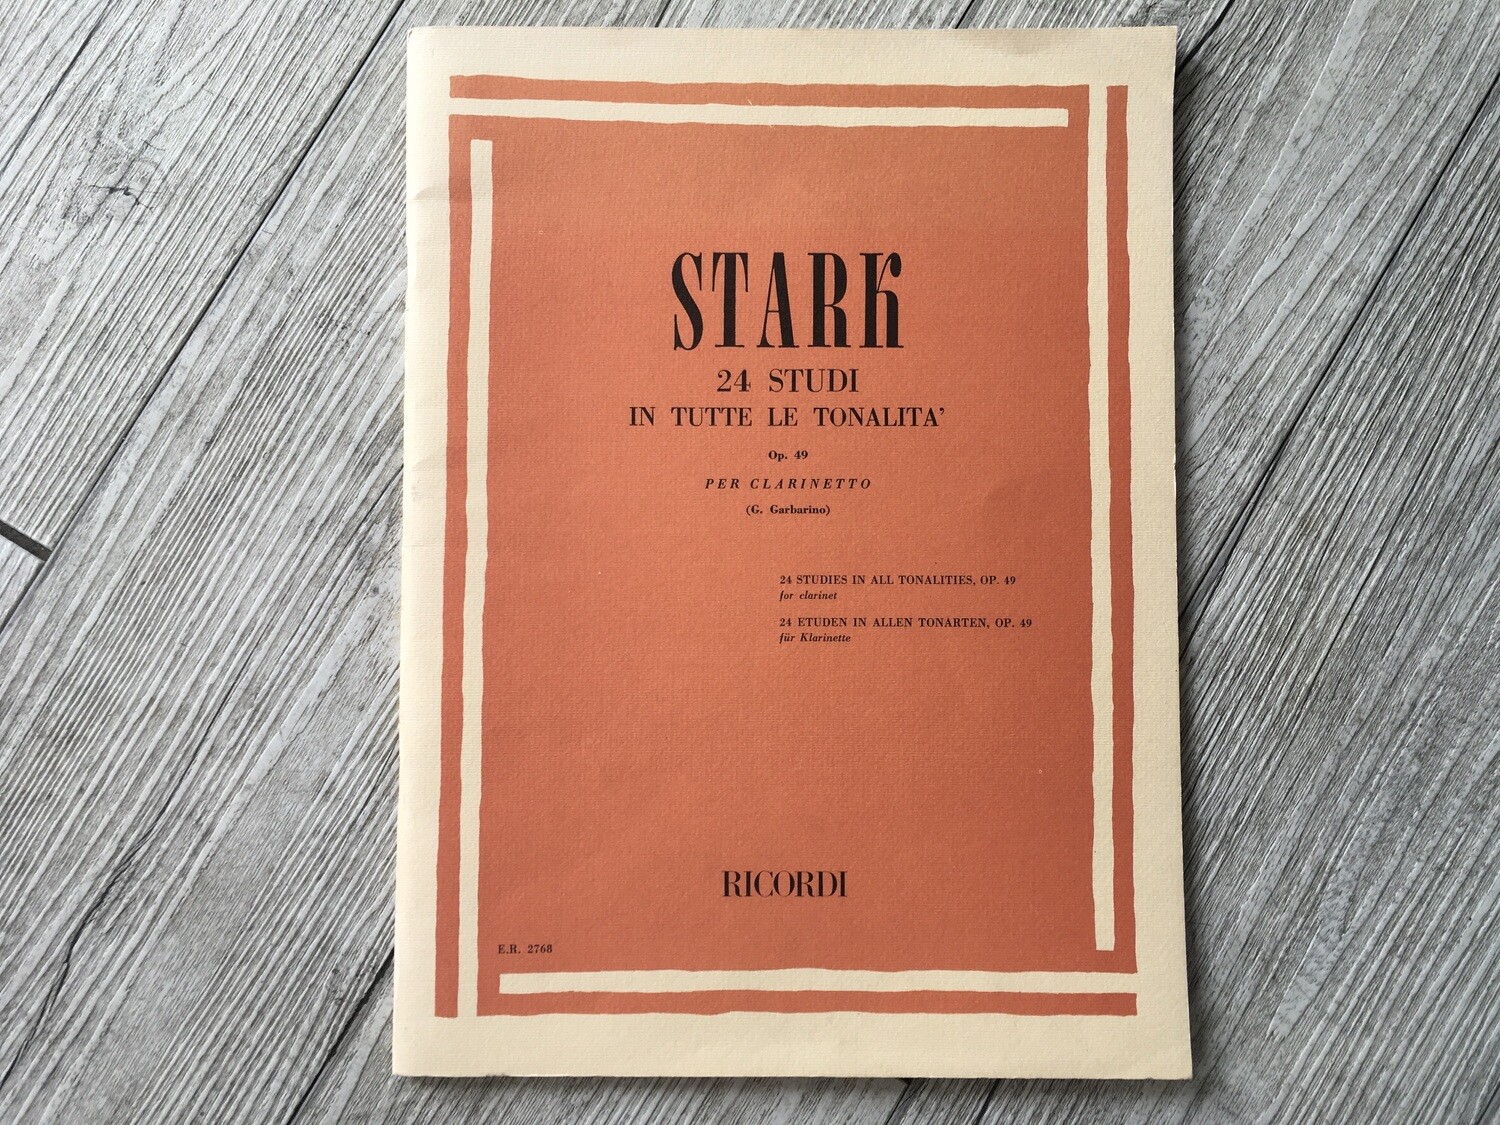 STARK - 24 studi in tutte le tonalità per clarinetto Op. 49